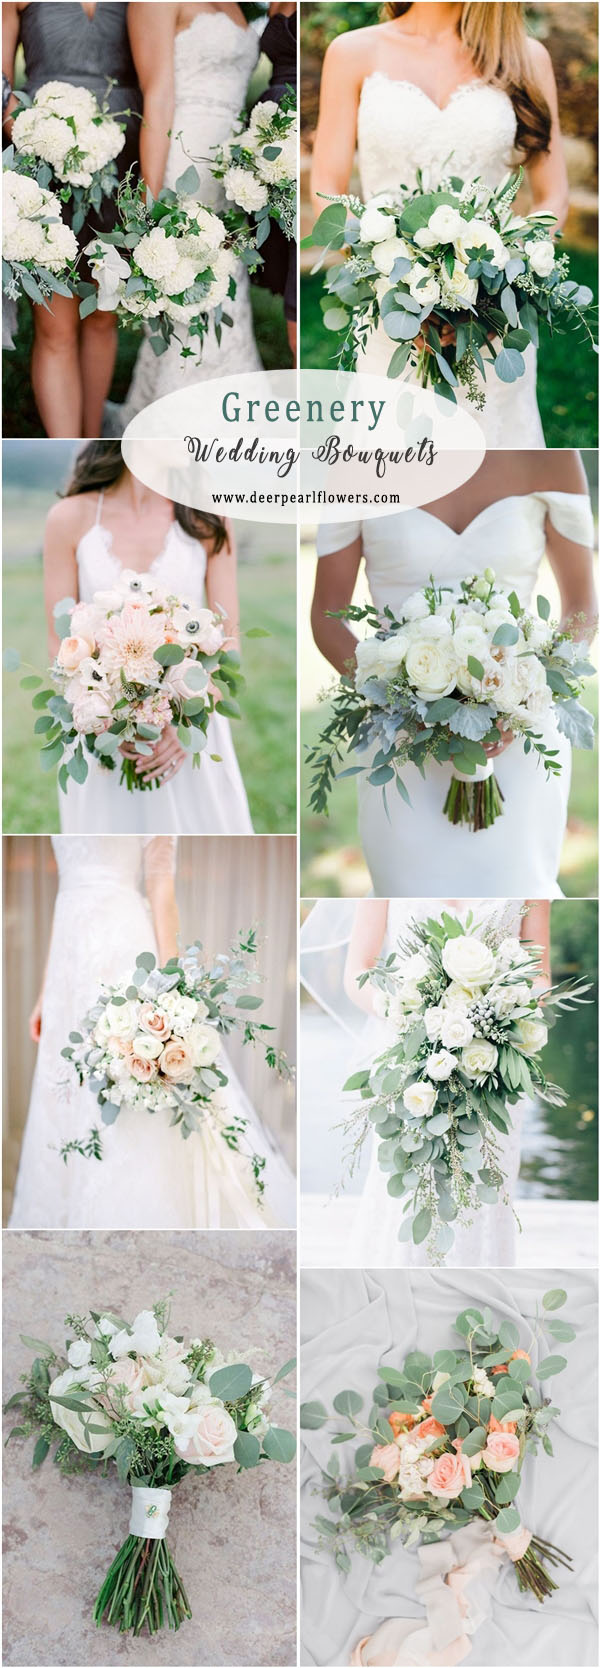 Greenery eucalyptus wedding bouquets